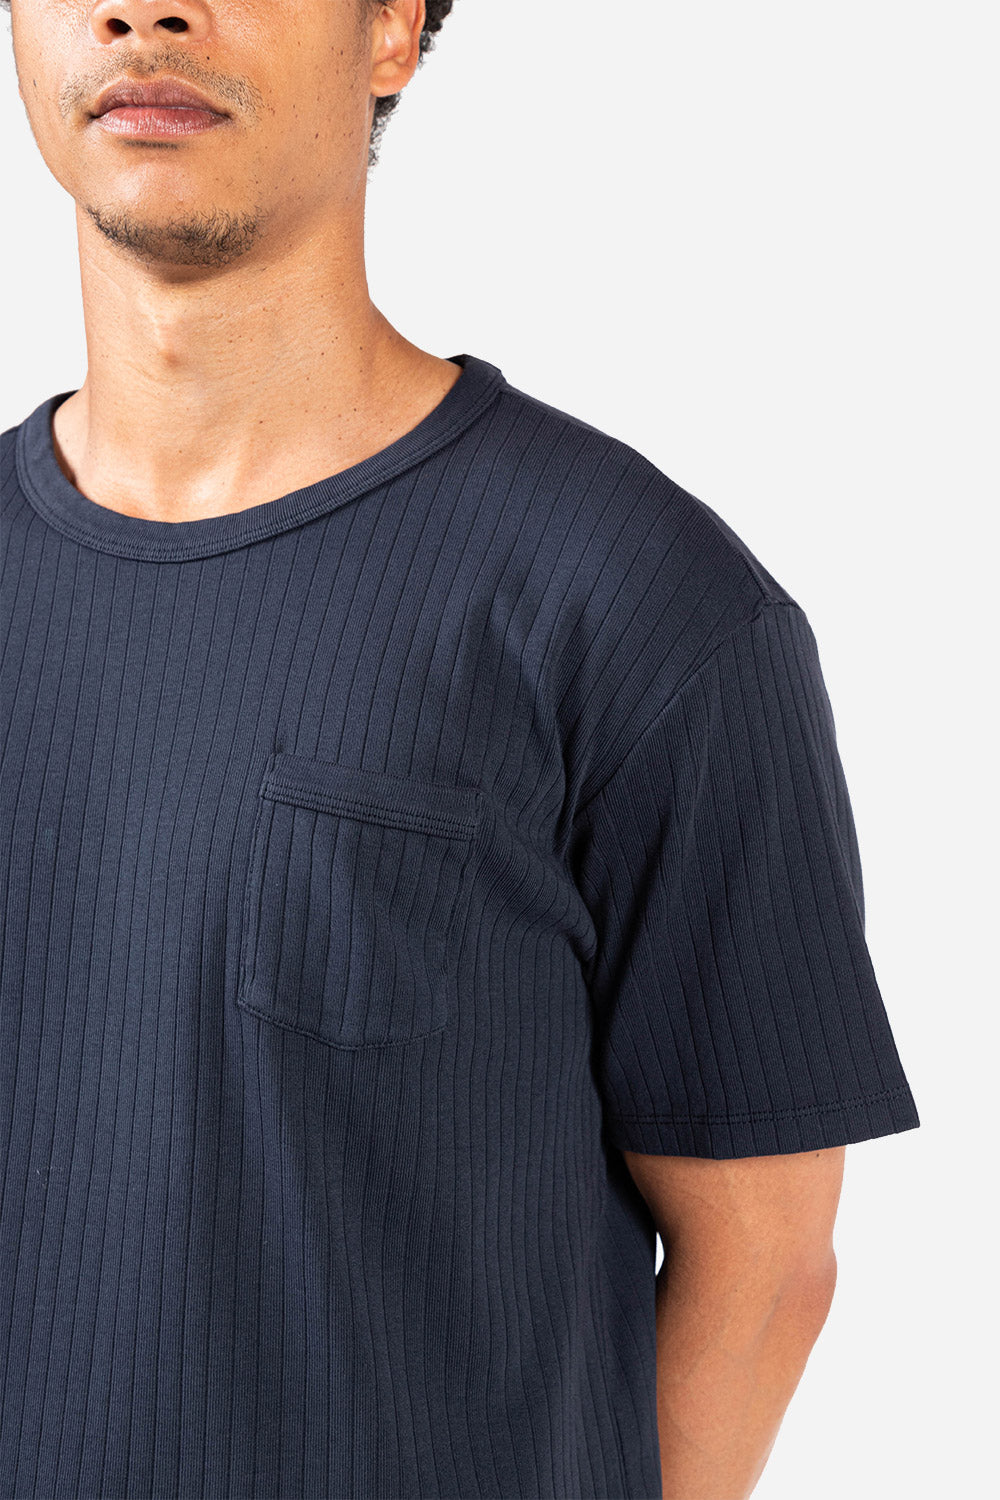 knickerbocker-ribbed-pocket-t-shirt-navy